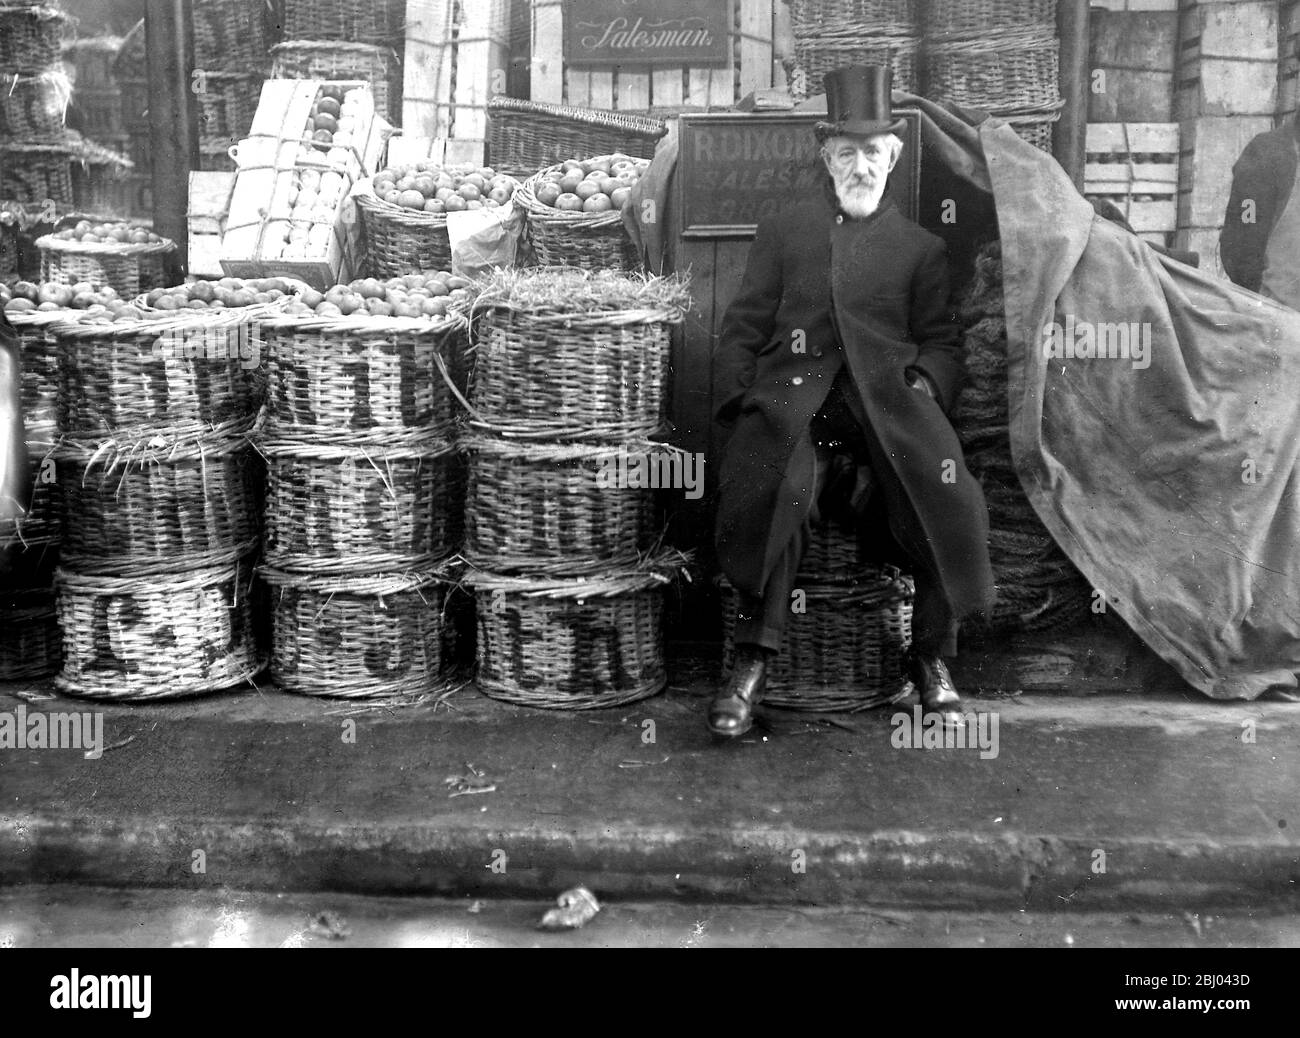 Der Kartoffelmangel - Verkäufer auf dem Markt in der Gemeinde wirbt für den Mangel. - 24. Februar 1917 Stockfoto